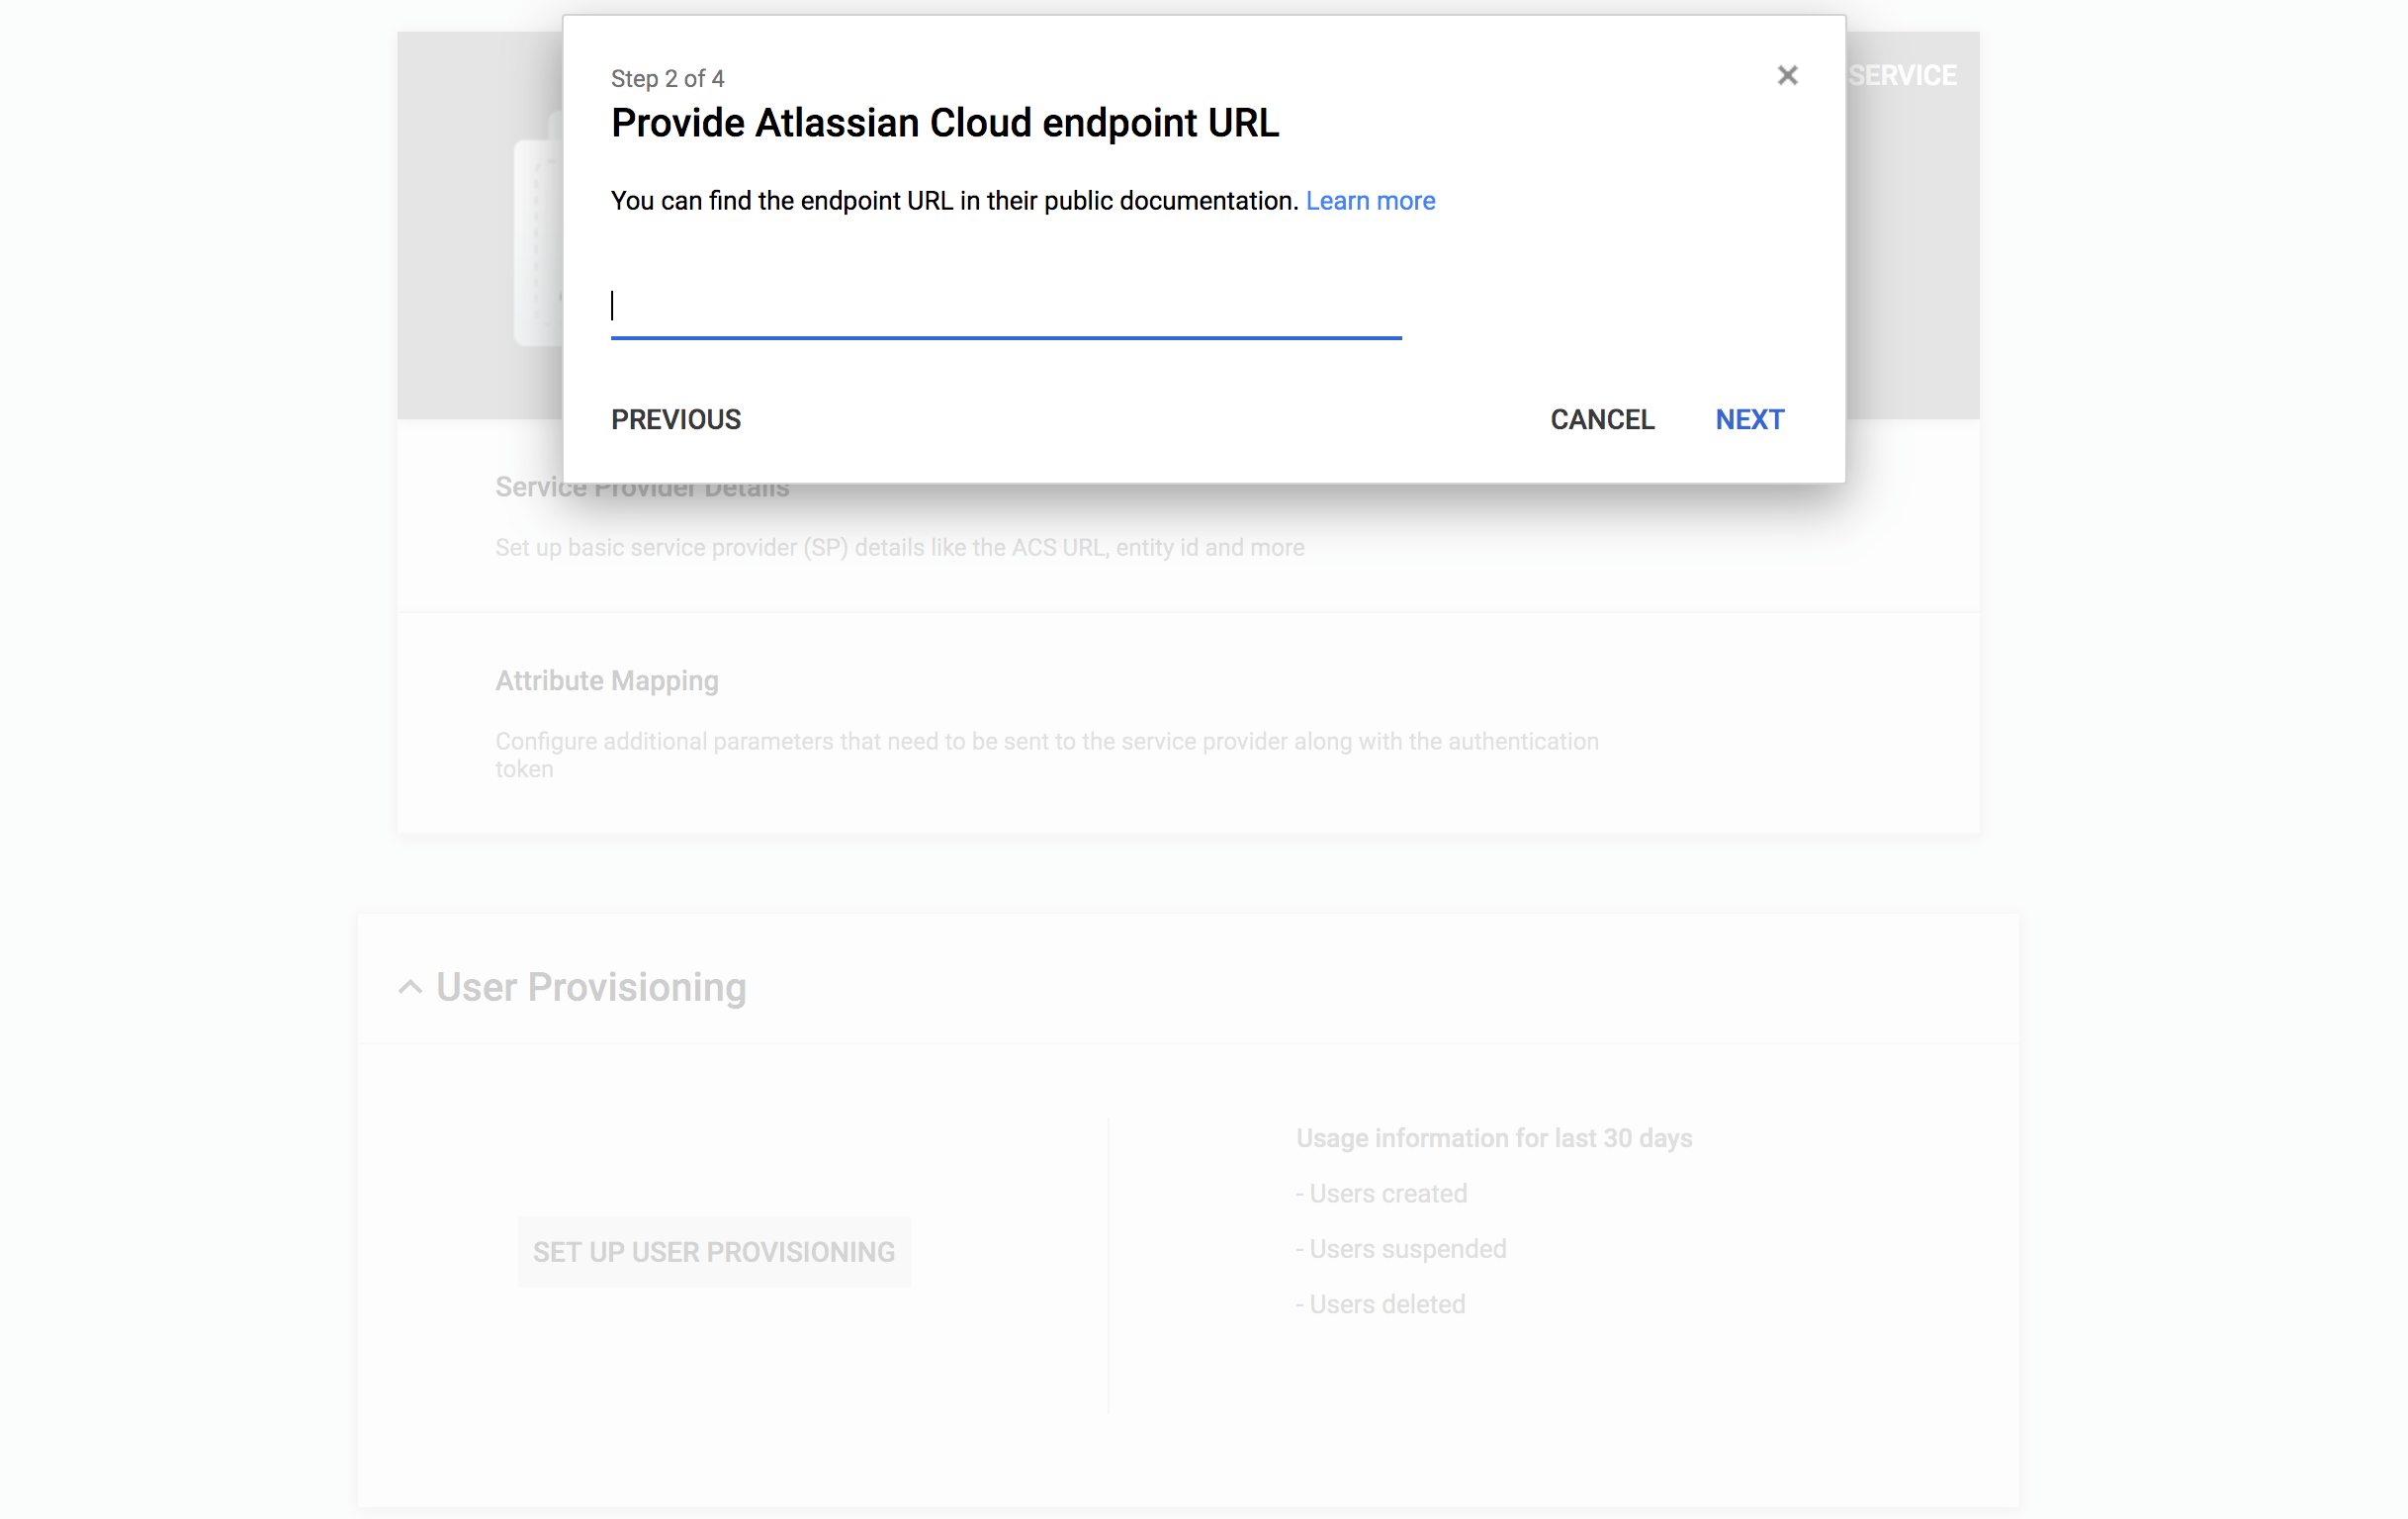 スクリーンショット: Atlassian Cloud エンドポイント URL を表示する画面